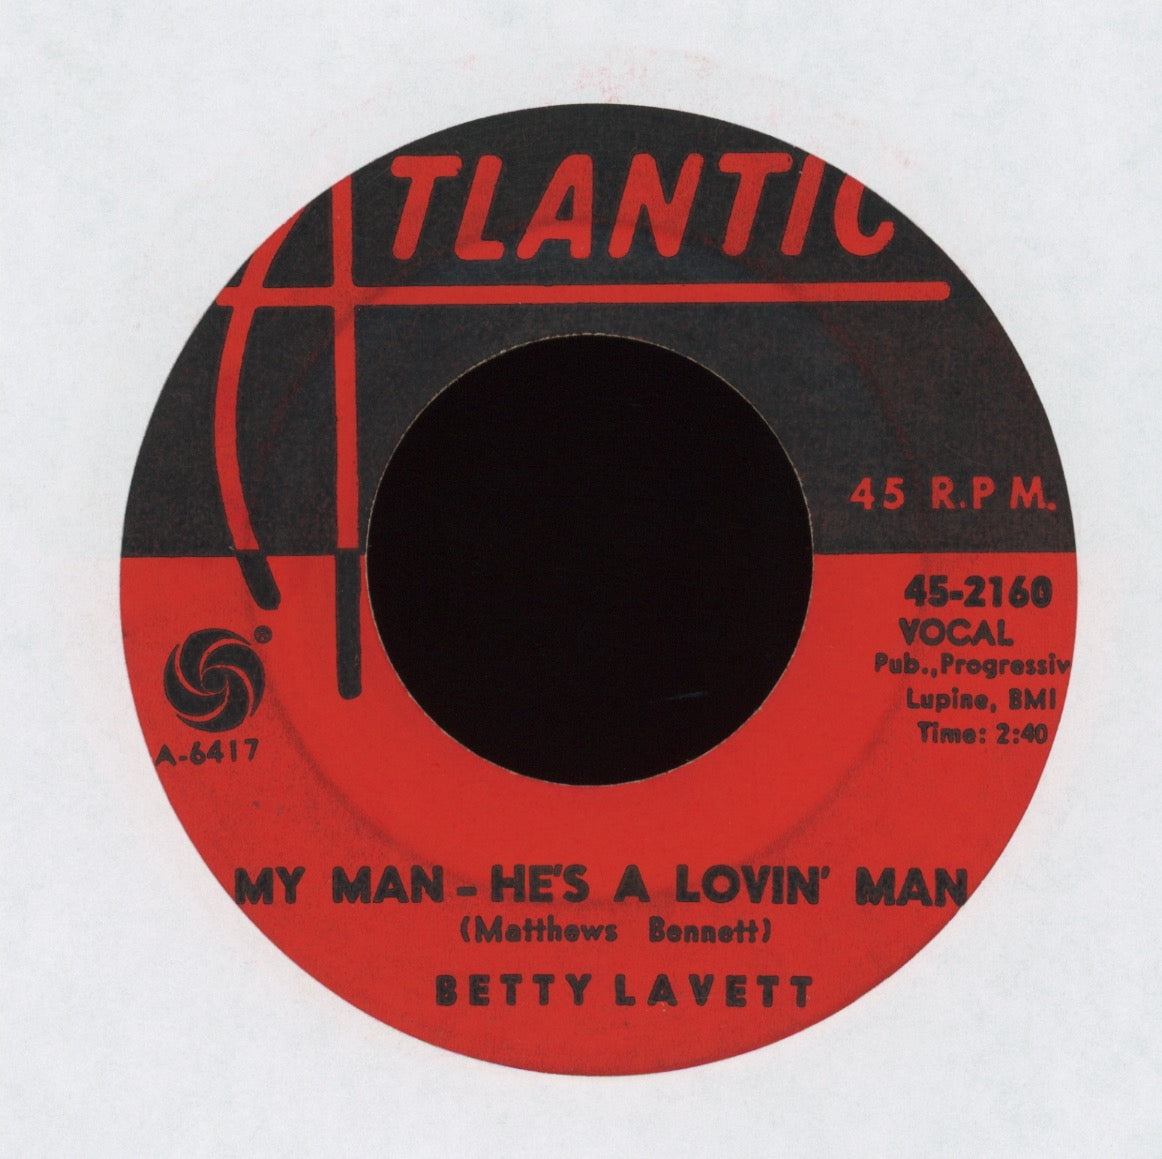 Bettye Lavette - My Man - He's A Lovin' Man on Atlantic